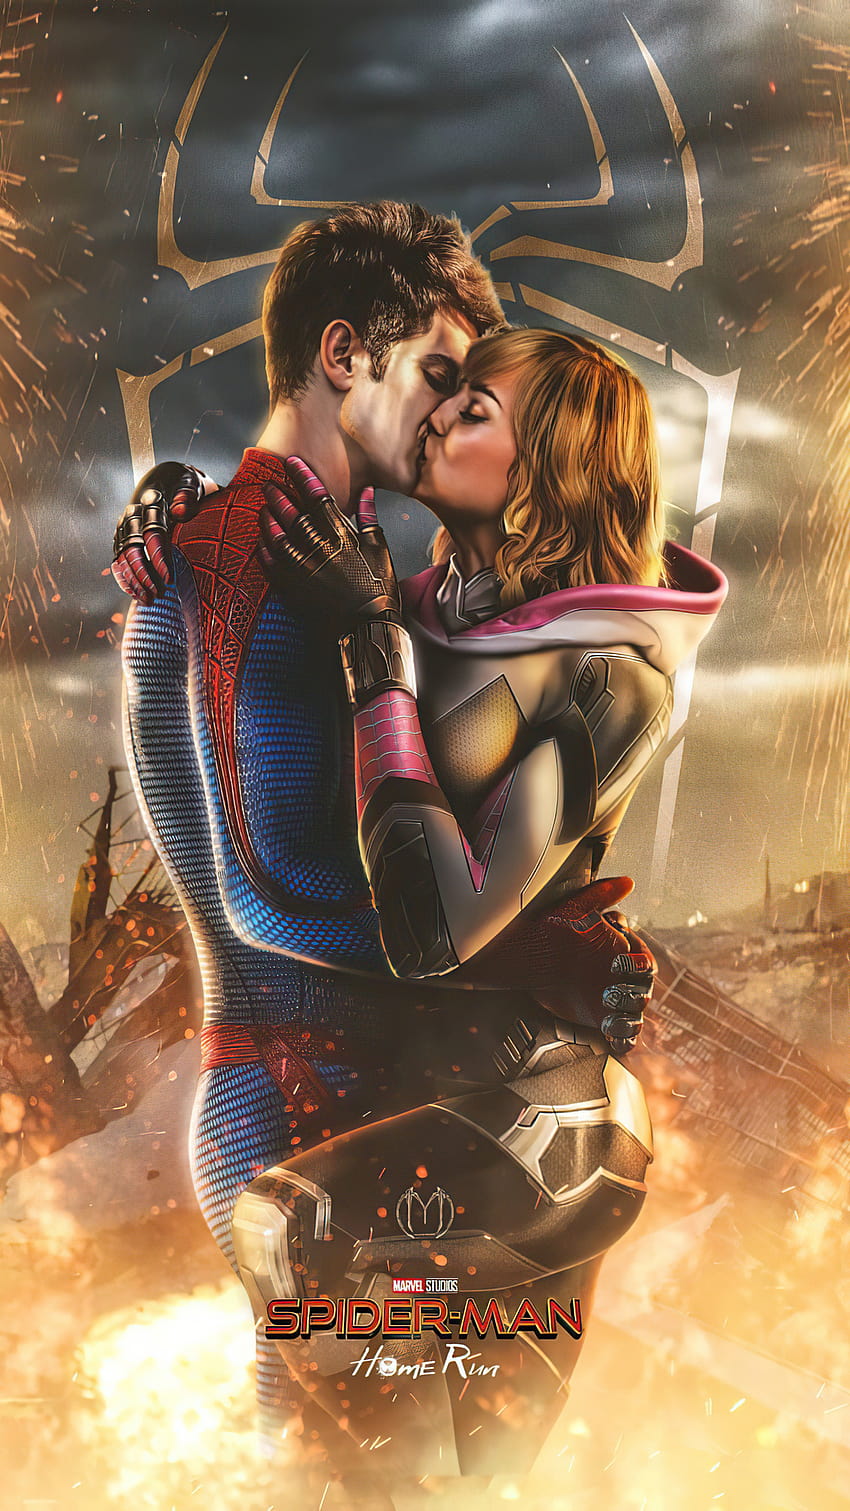 1080x1920 Spiderman e Gwen Stacy che si baciano Iphone 7,6s,6 Plus, Pixel xl, One Plus 3,3t,5, Sfondi e, spider man gwen stacy Sfondo del telefono HD